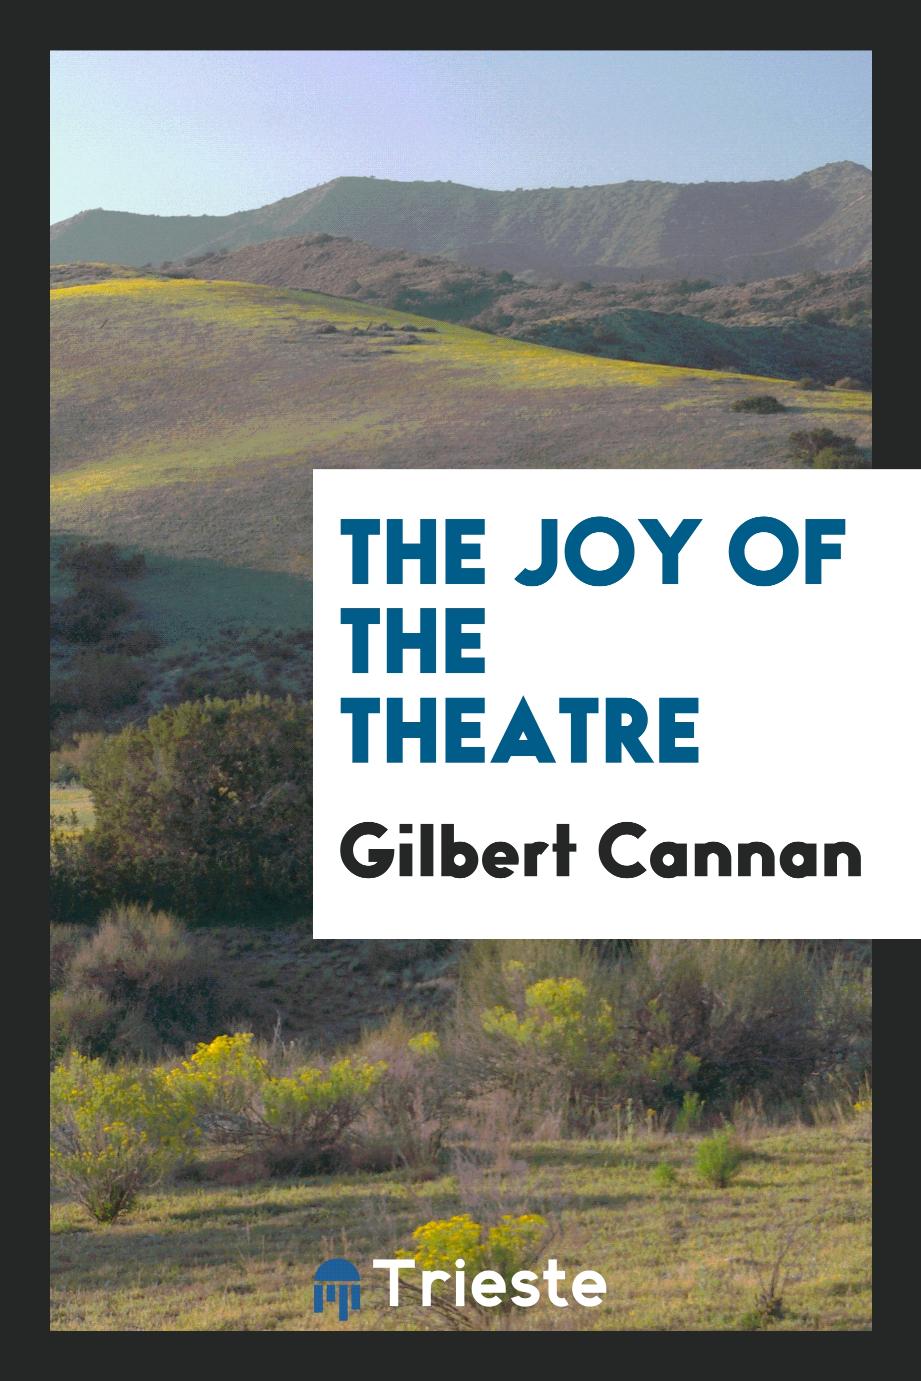 The Joy of the theatre